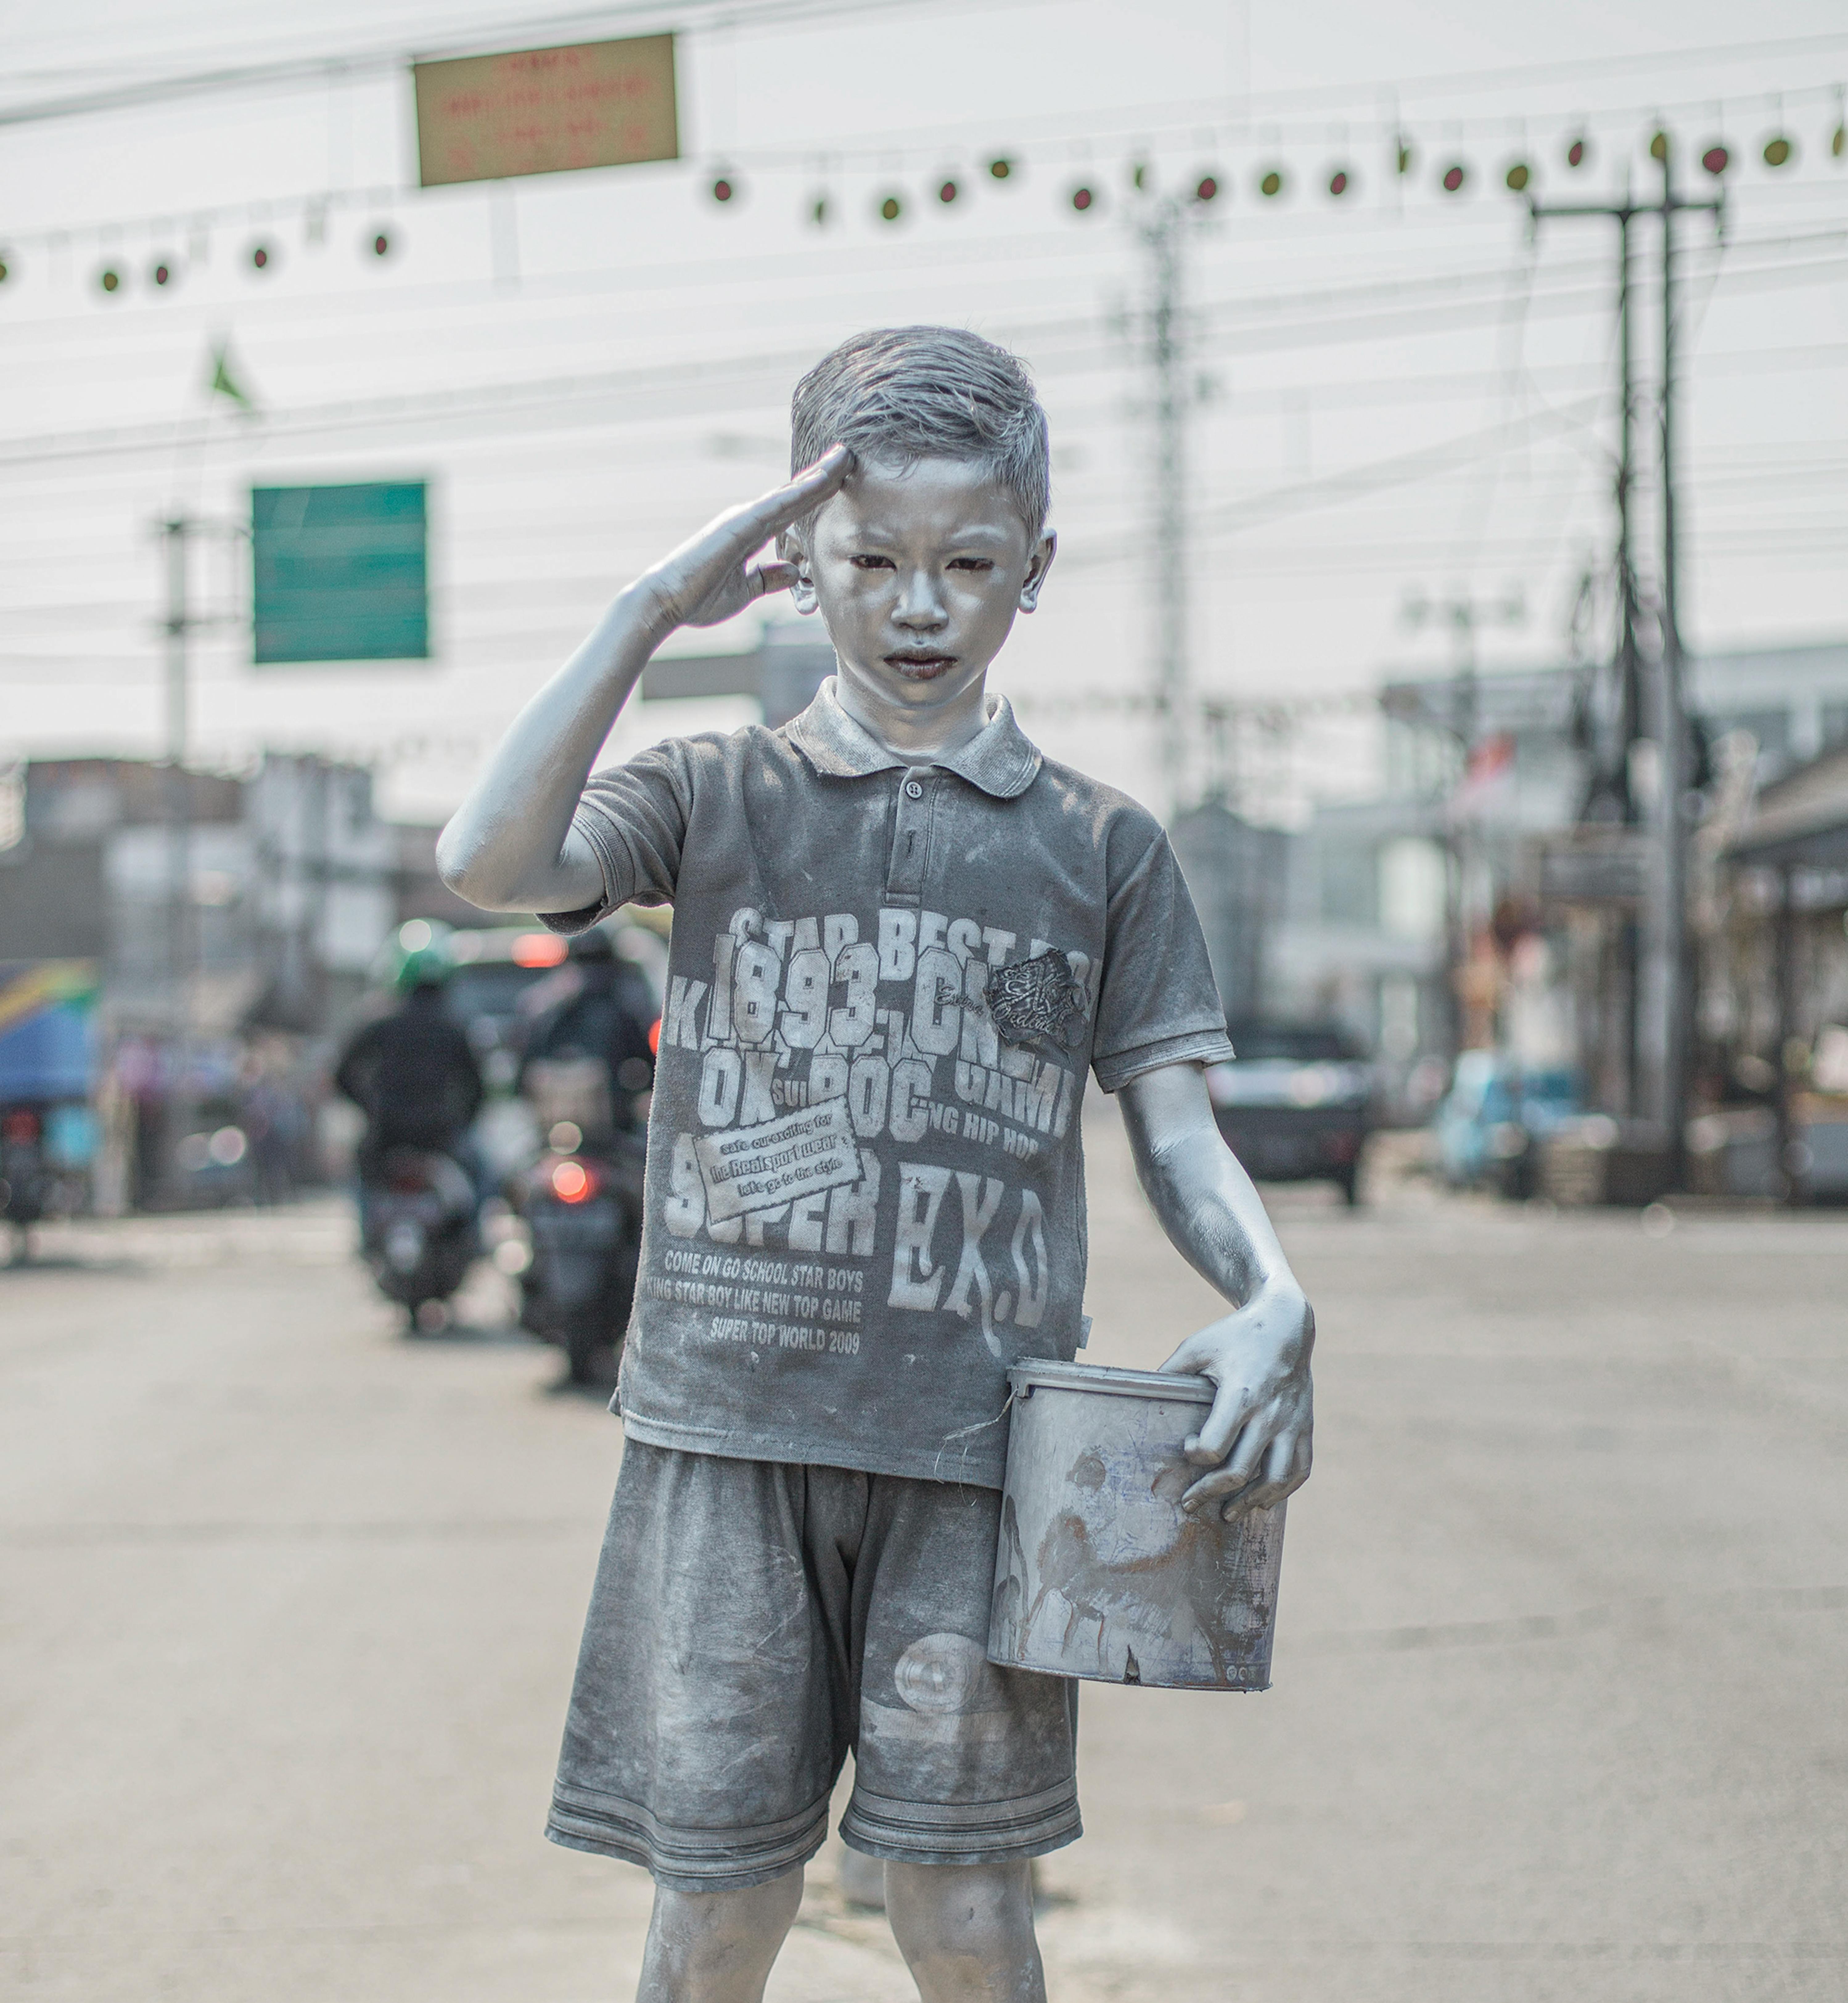 © Agoes Rudianto, Indonesia, GEOlino -Il popolo d'argento: Rifki Firmansyah, dodici anni, si dipinge con vernice argentata al mattino e poi si esibisce agli incroci stradali come un piccolo robot umano fino al pomeriggio per aiutare la sua famiglia